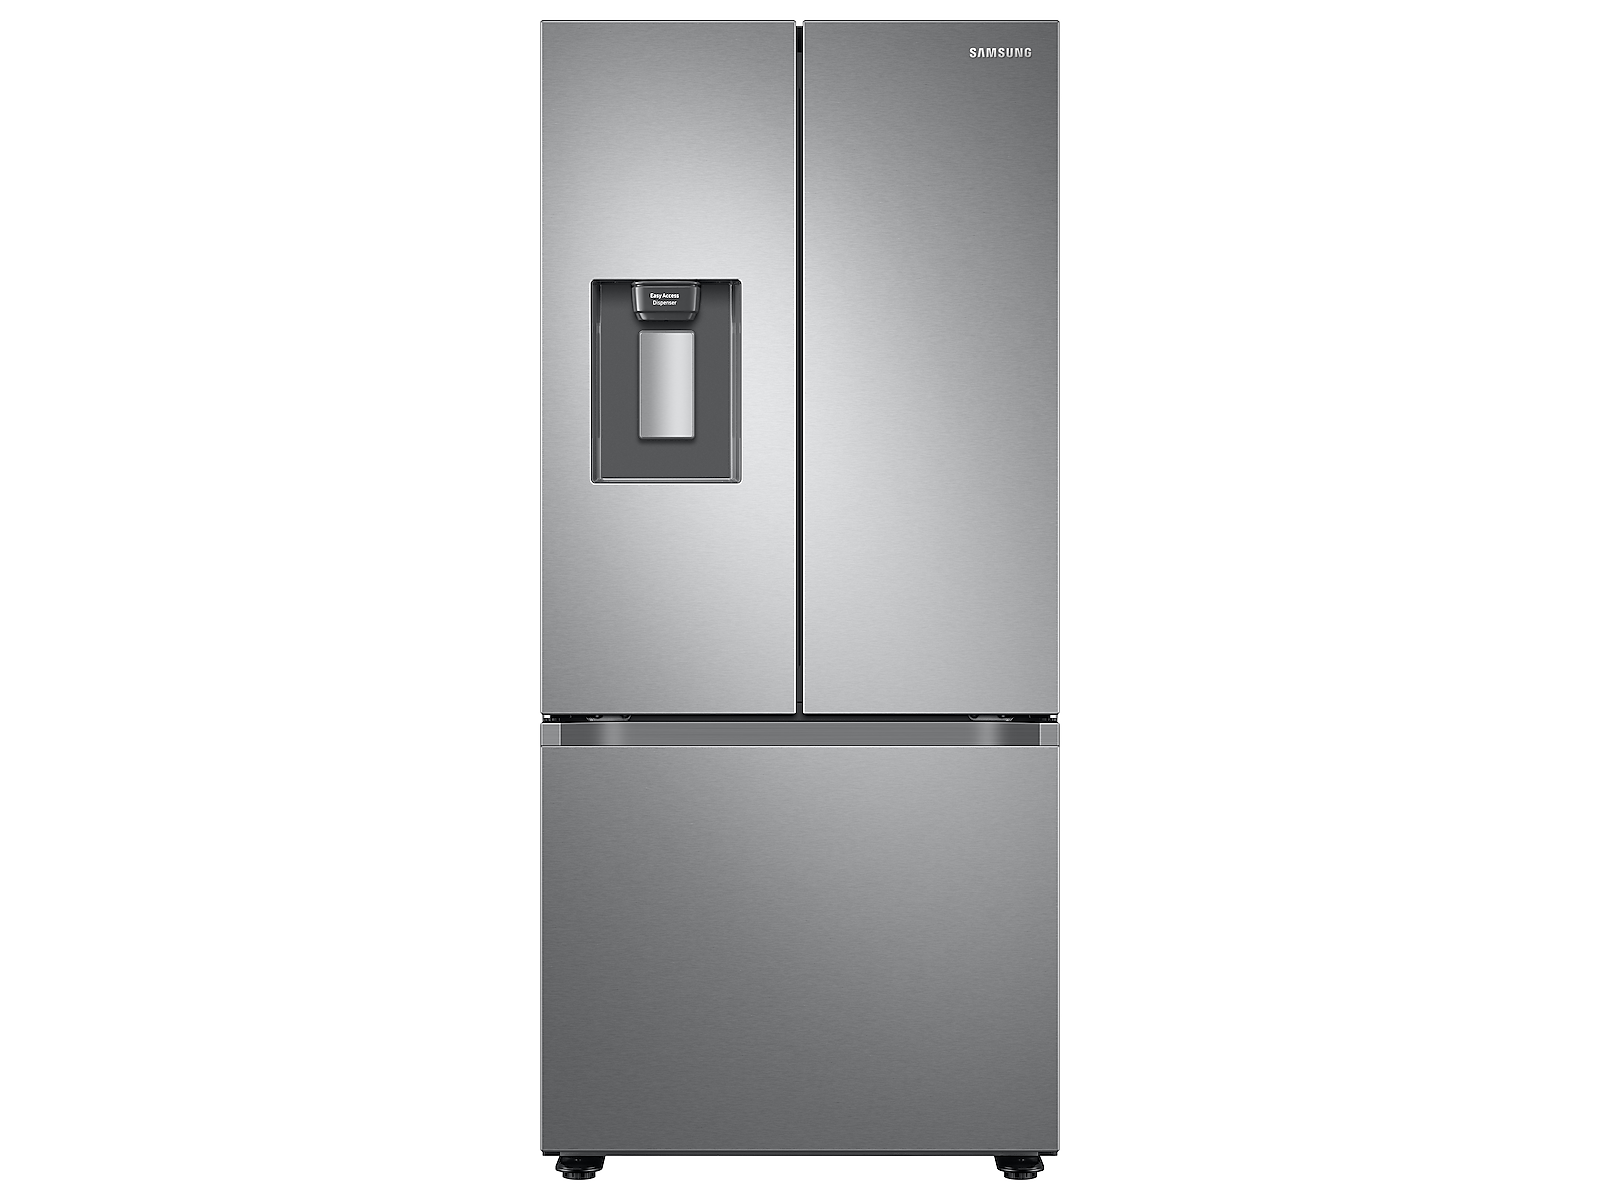 Samsung 22 Cu. Ft. Smart 3-Door French Door Refrigerator With External Water Dispenser In Silver(RF22A4221SR/AA)